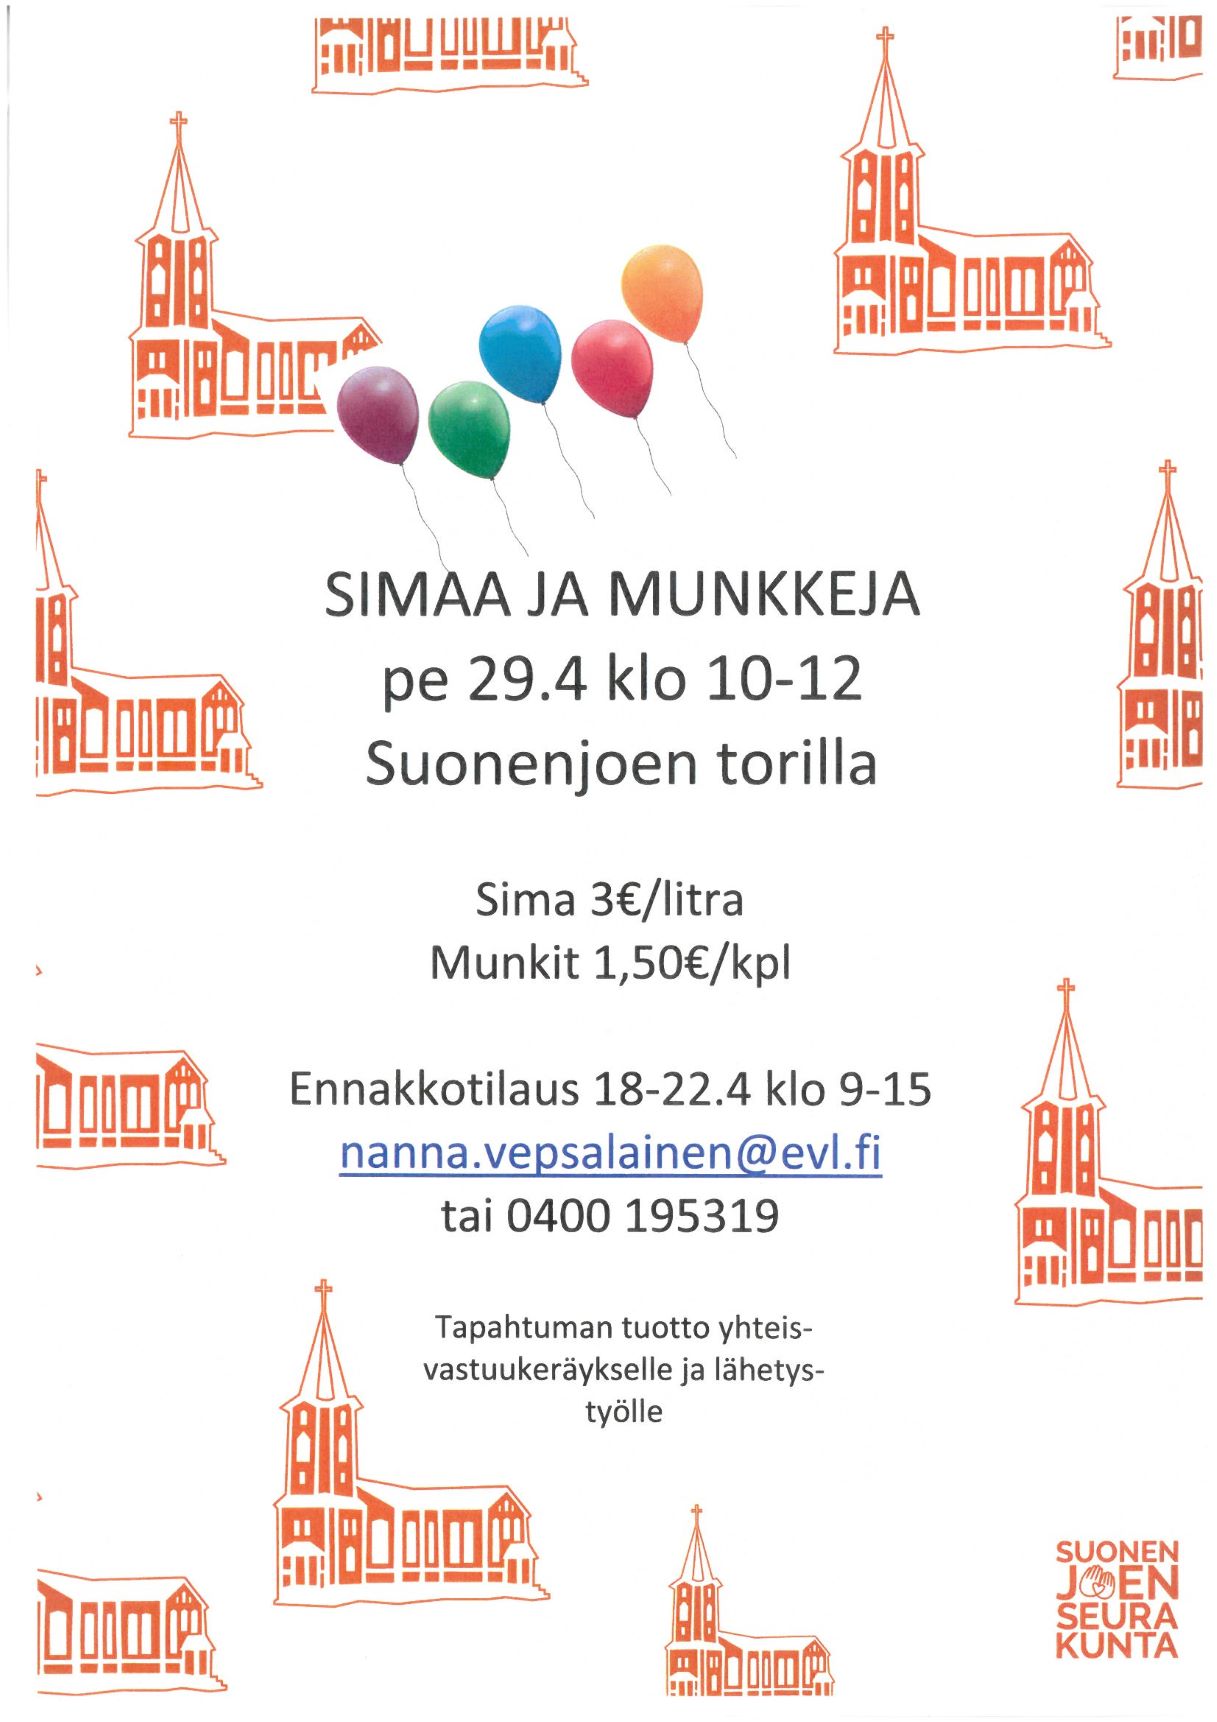 Suonenjoen seurakunnan mainos siman ja munkkien mynnistä torilla pe 29.4.